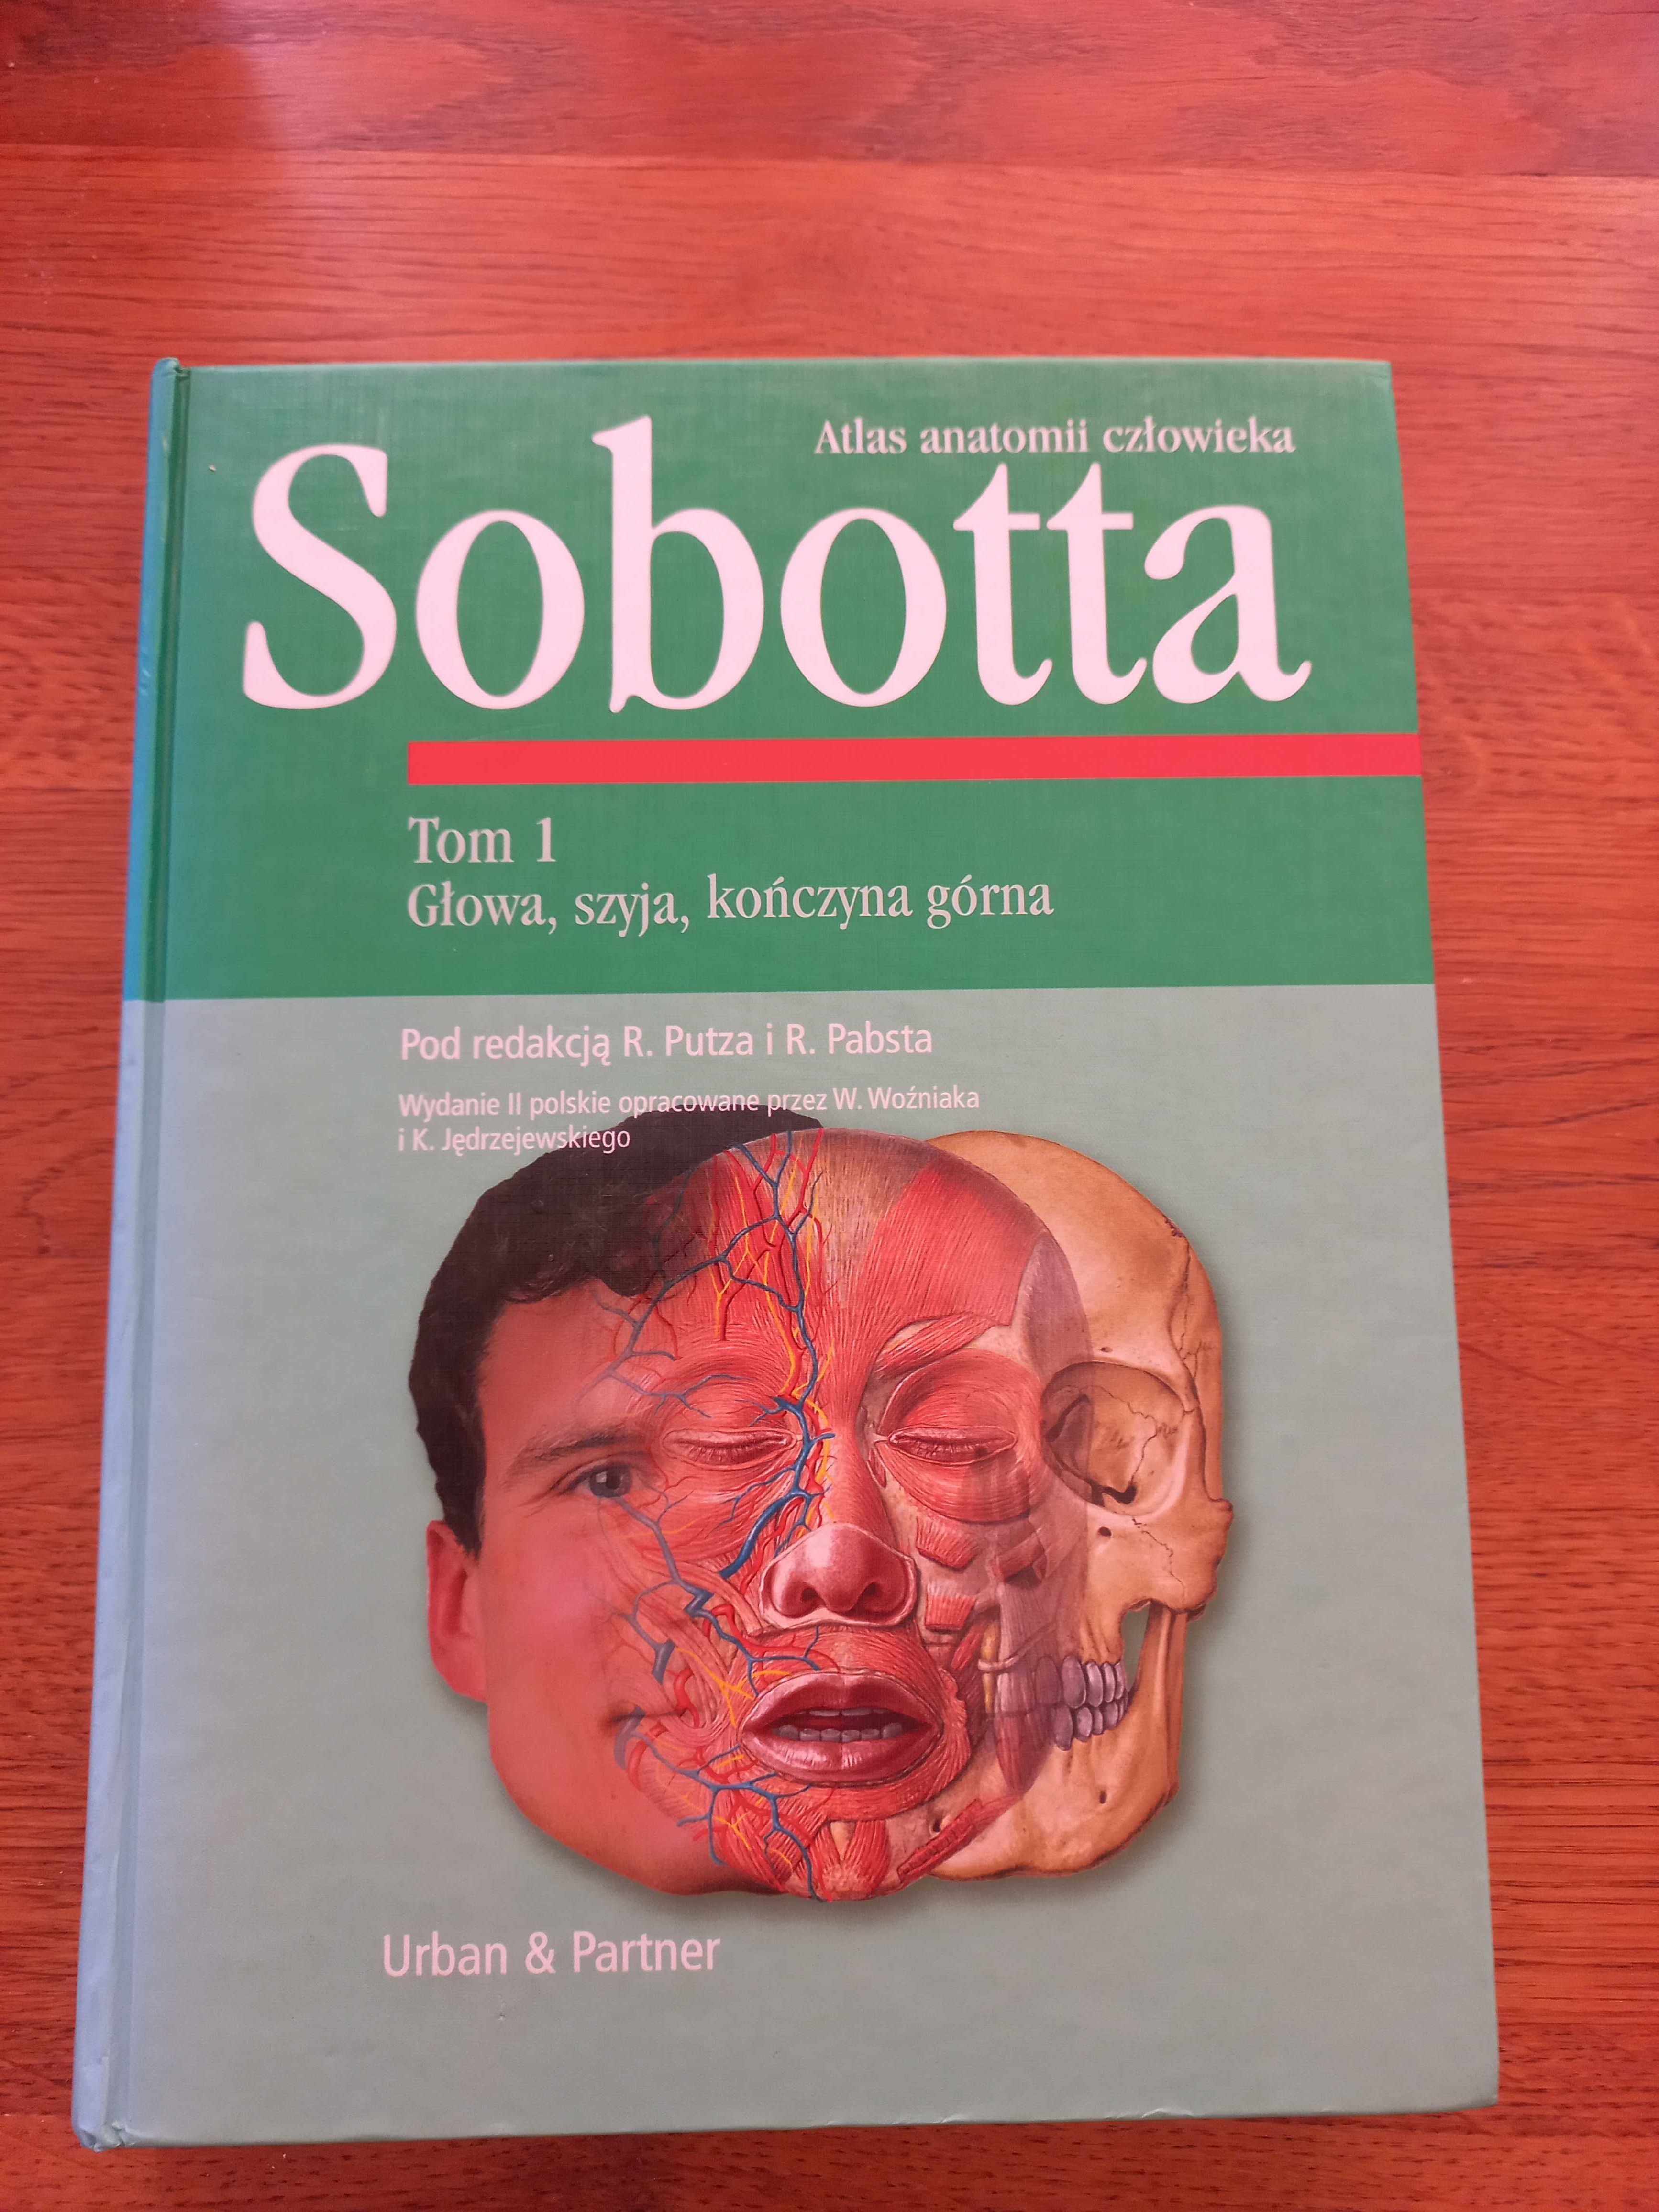 Sobotta atlas anatomii człowieka część 1